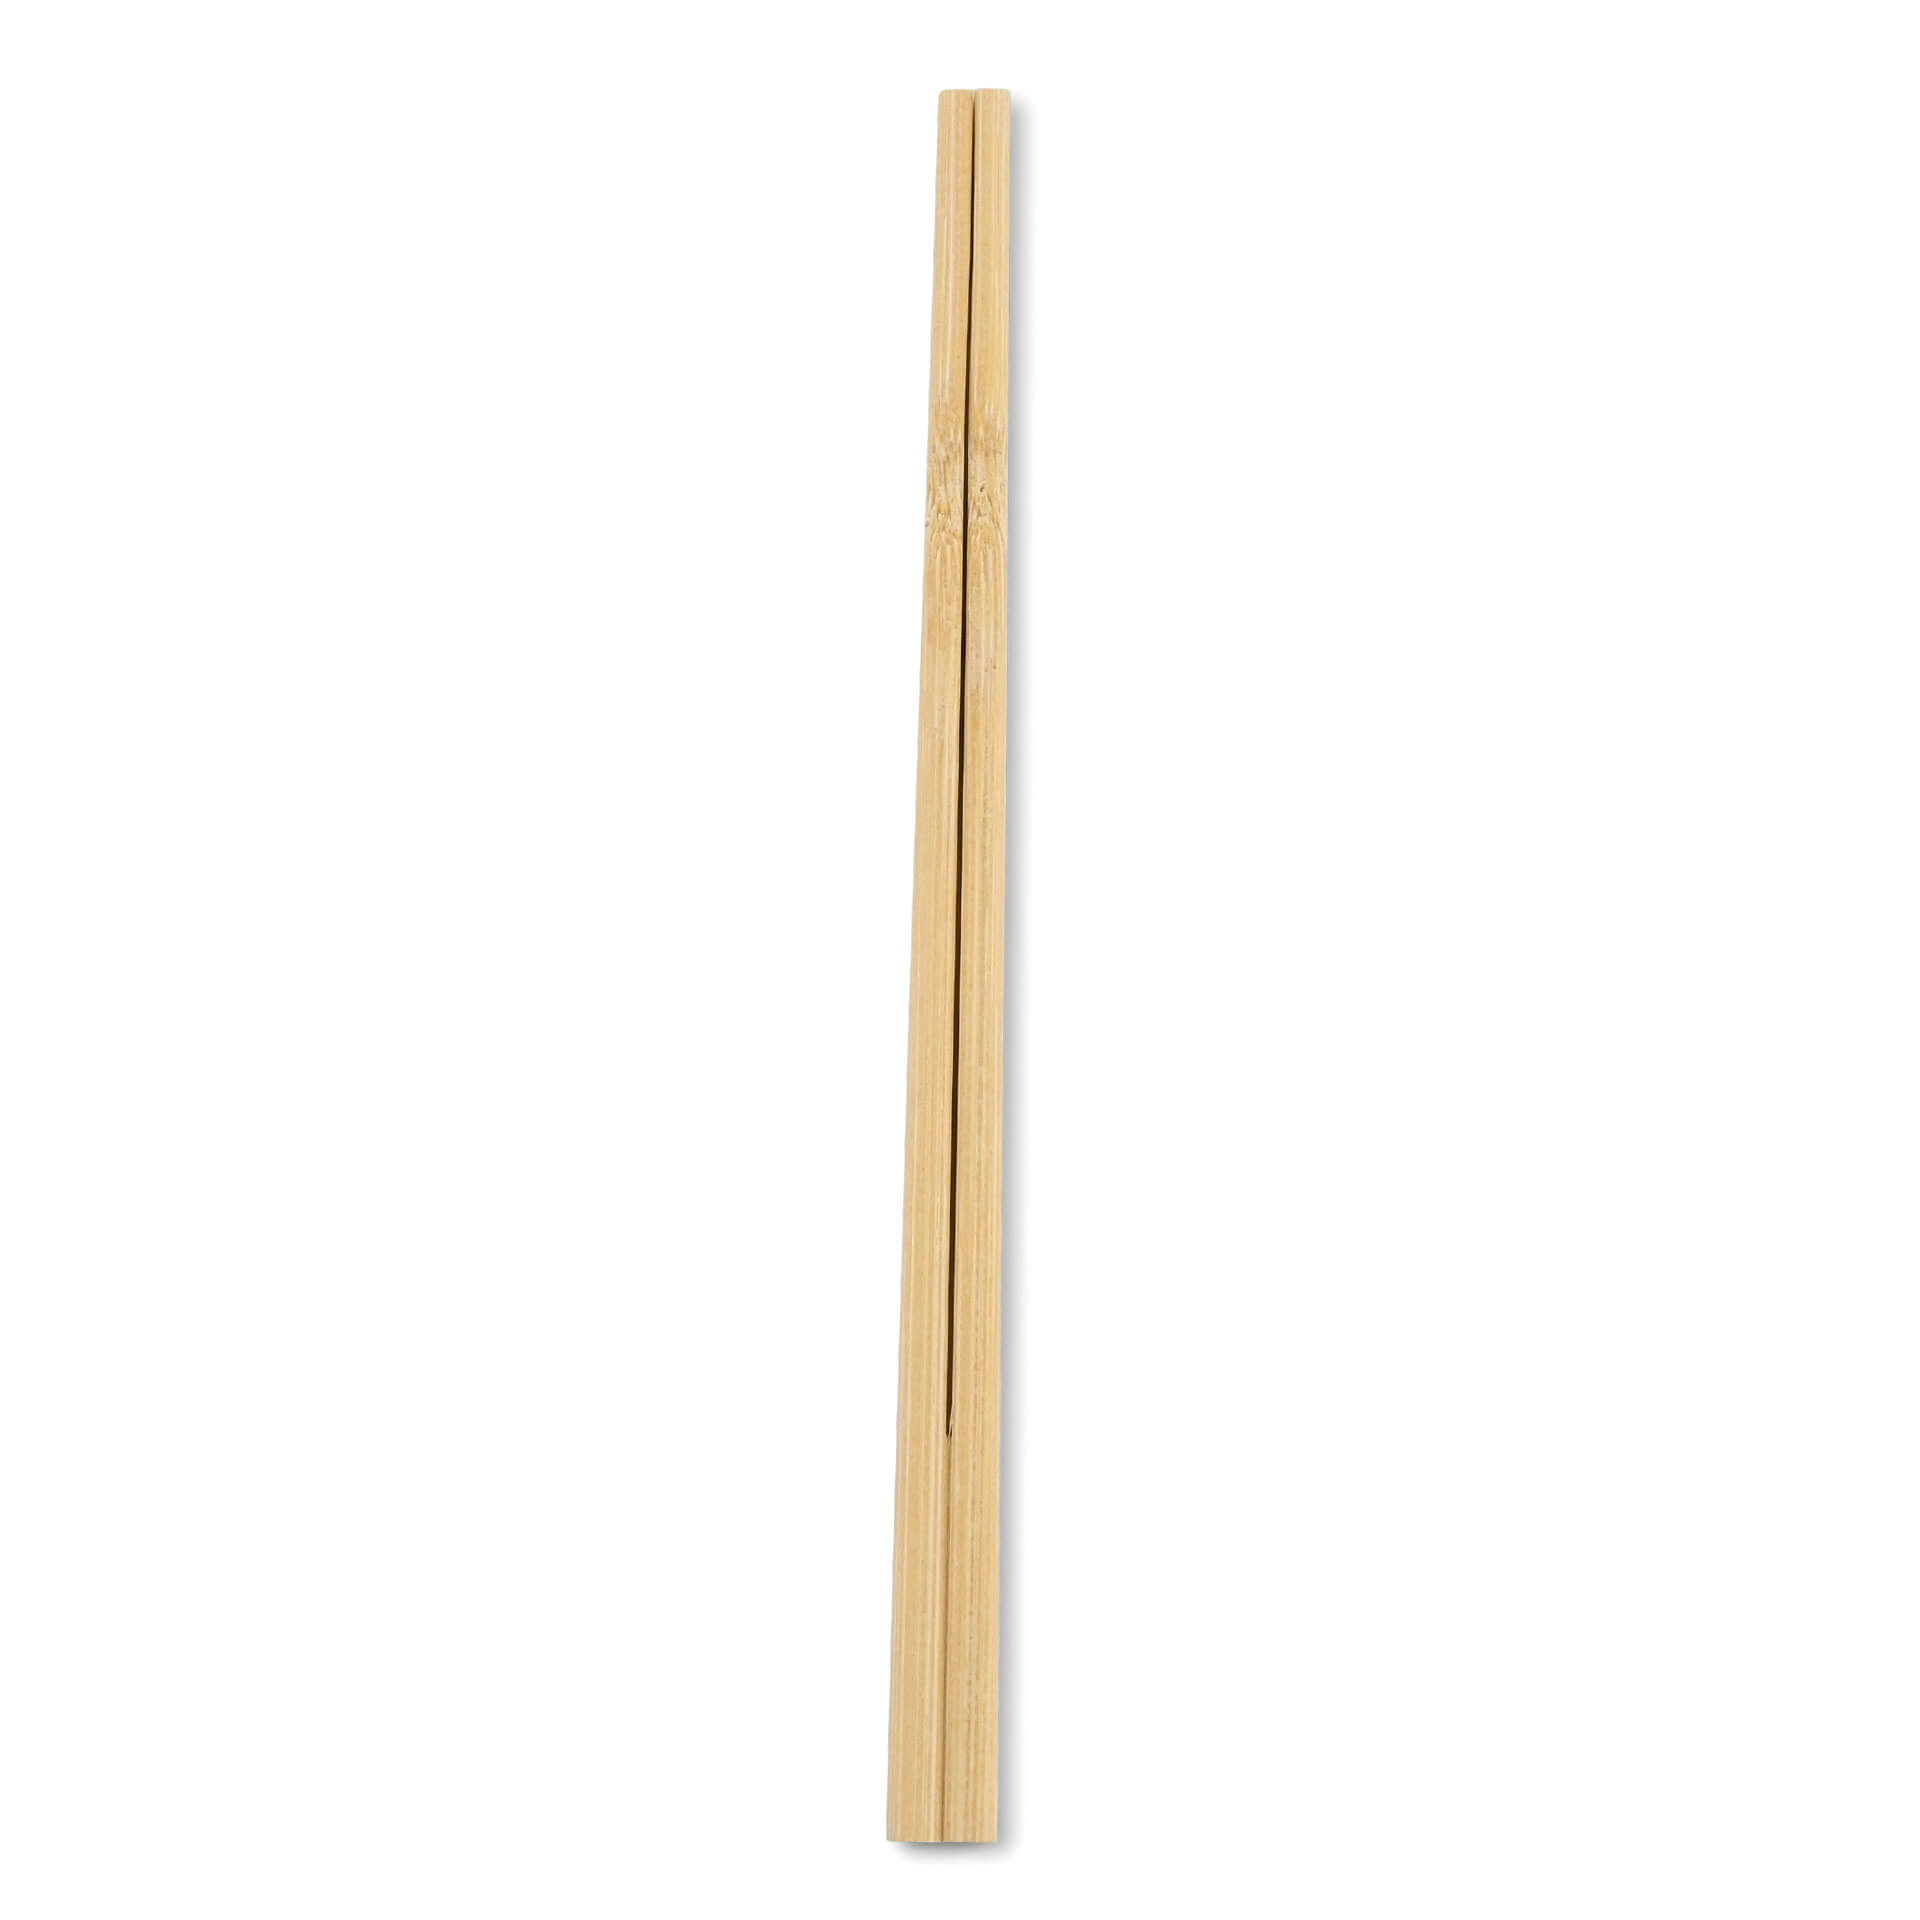 Essstäbchen aus Bambus (20 cm), paarweise verpackt